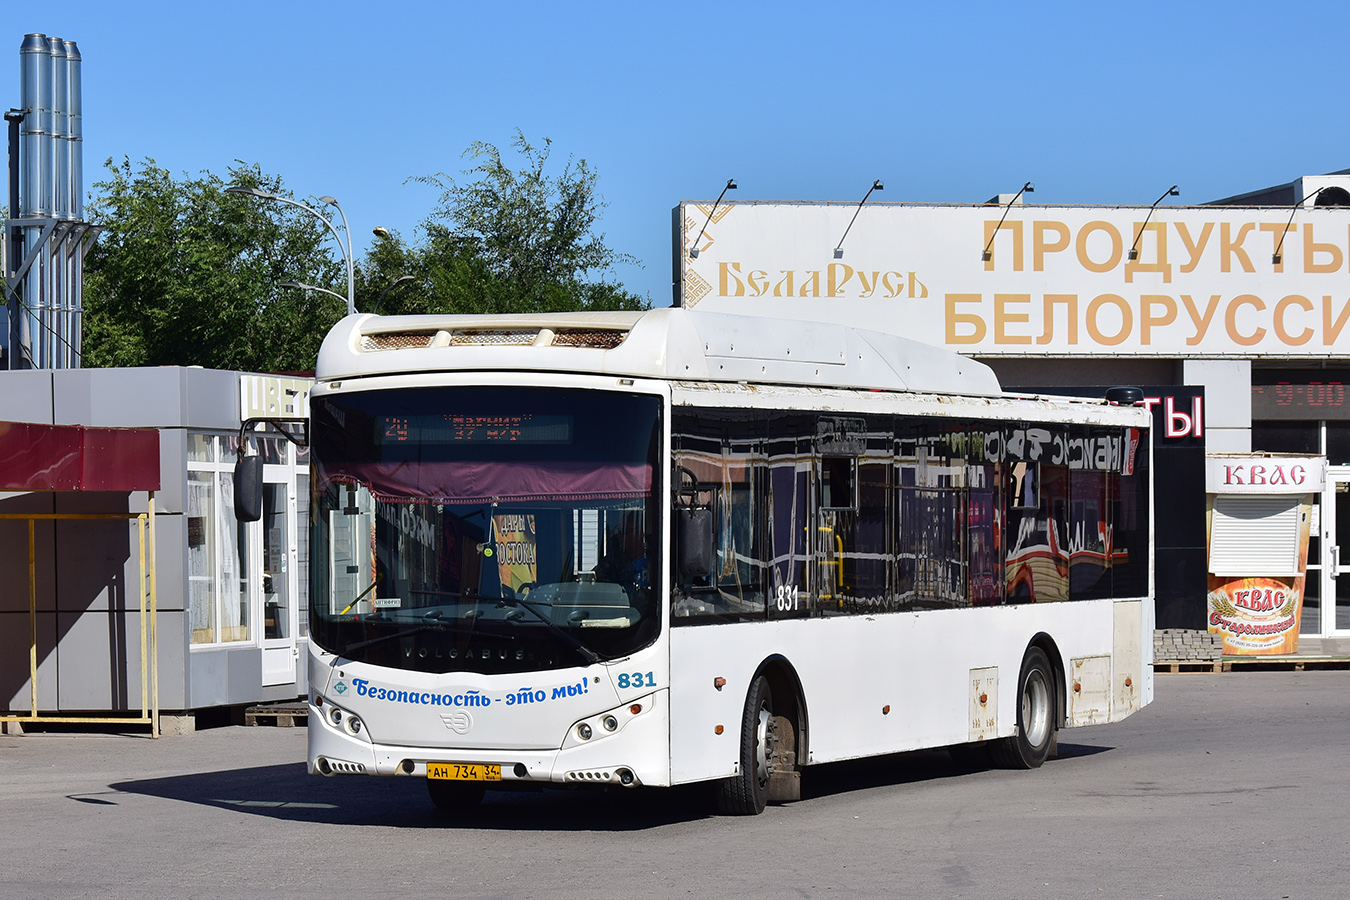 Volgogradas apgabals, Volgabus-5270.GH № 831